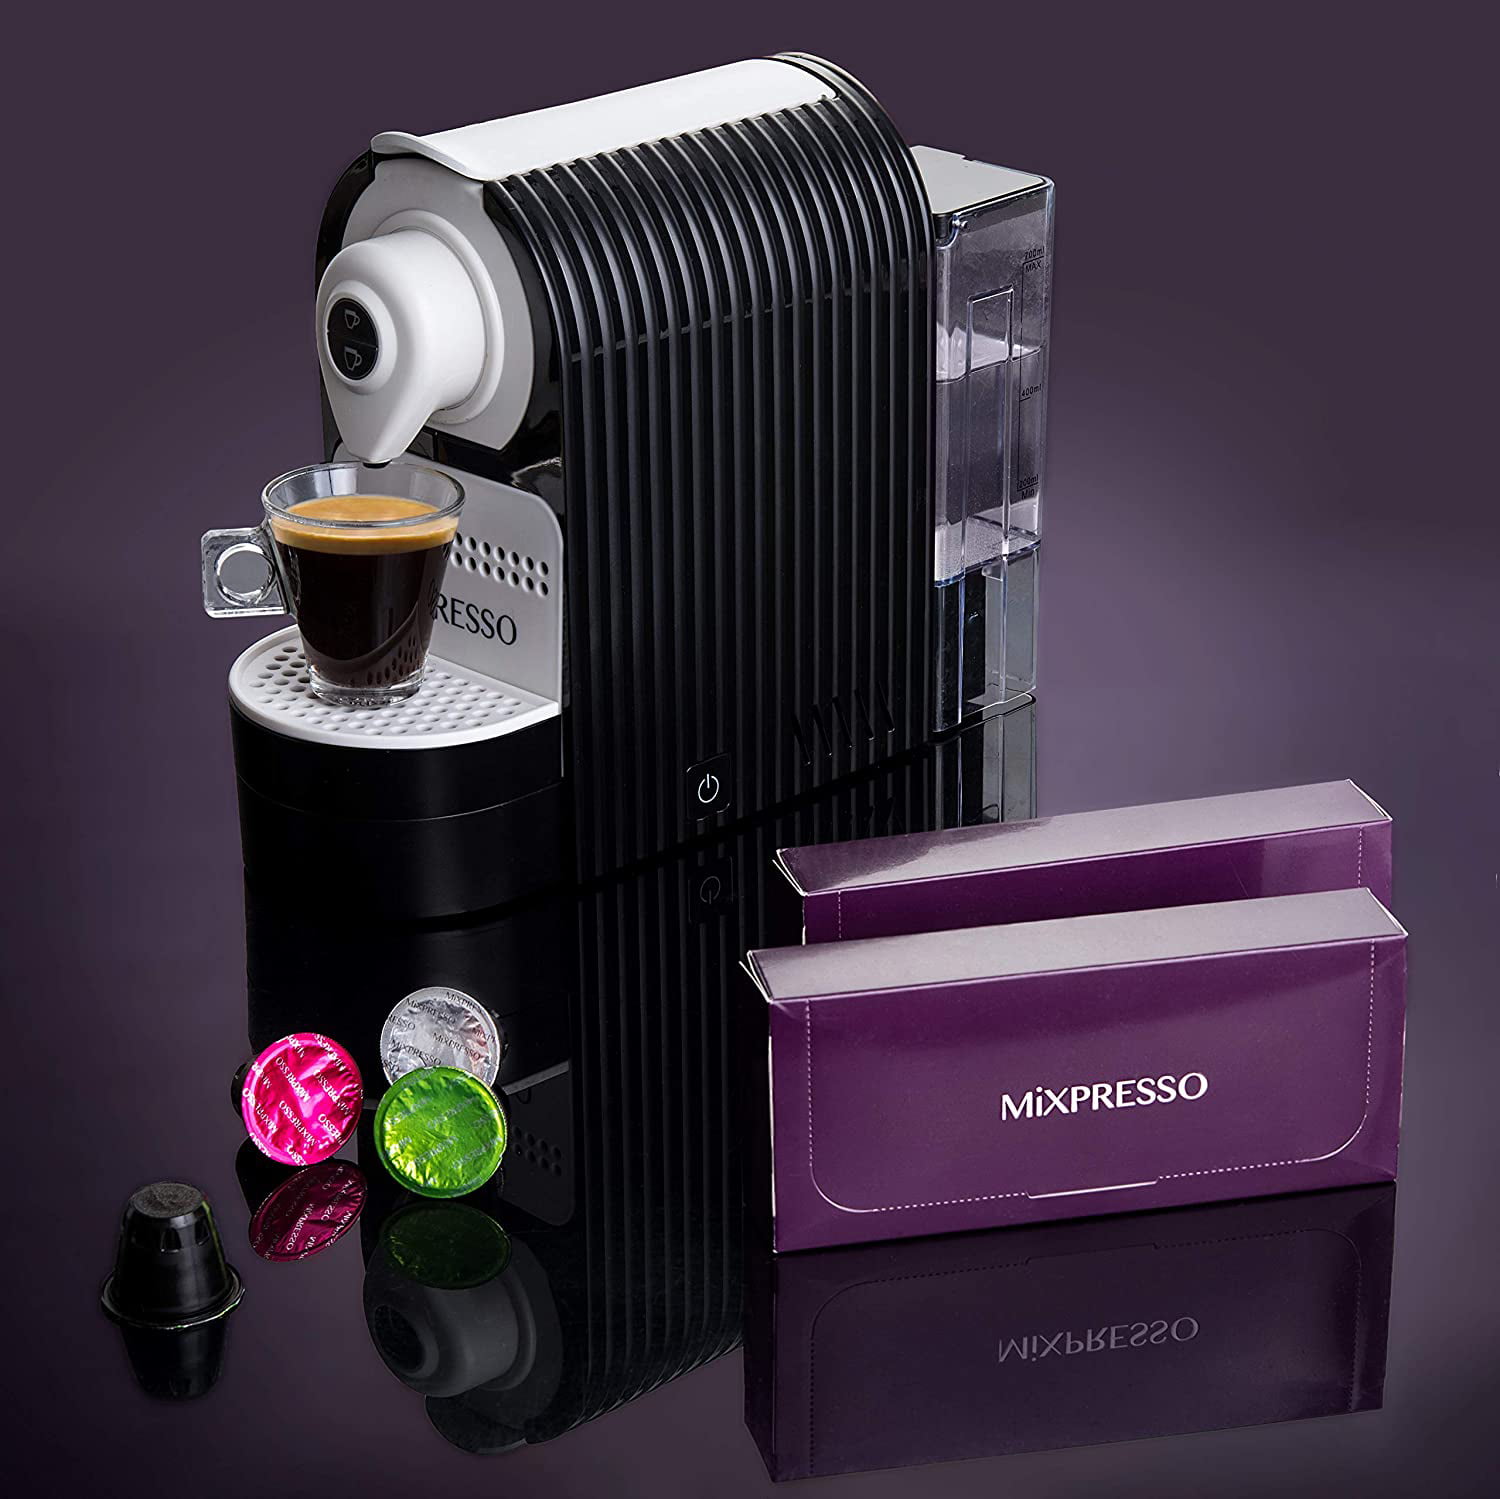 Mixpresso RNAB0BCPX5KGX mixpresso espresso machine for nespresso compatible  capsule, single serve coffee maker programmable buttons for espresso pods